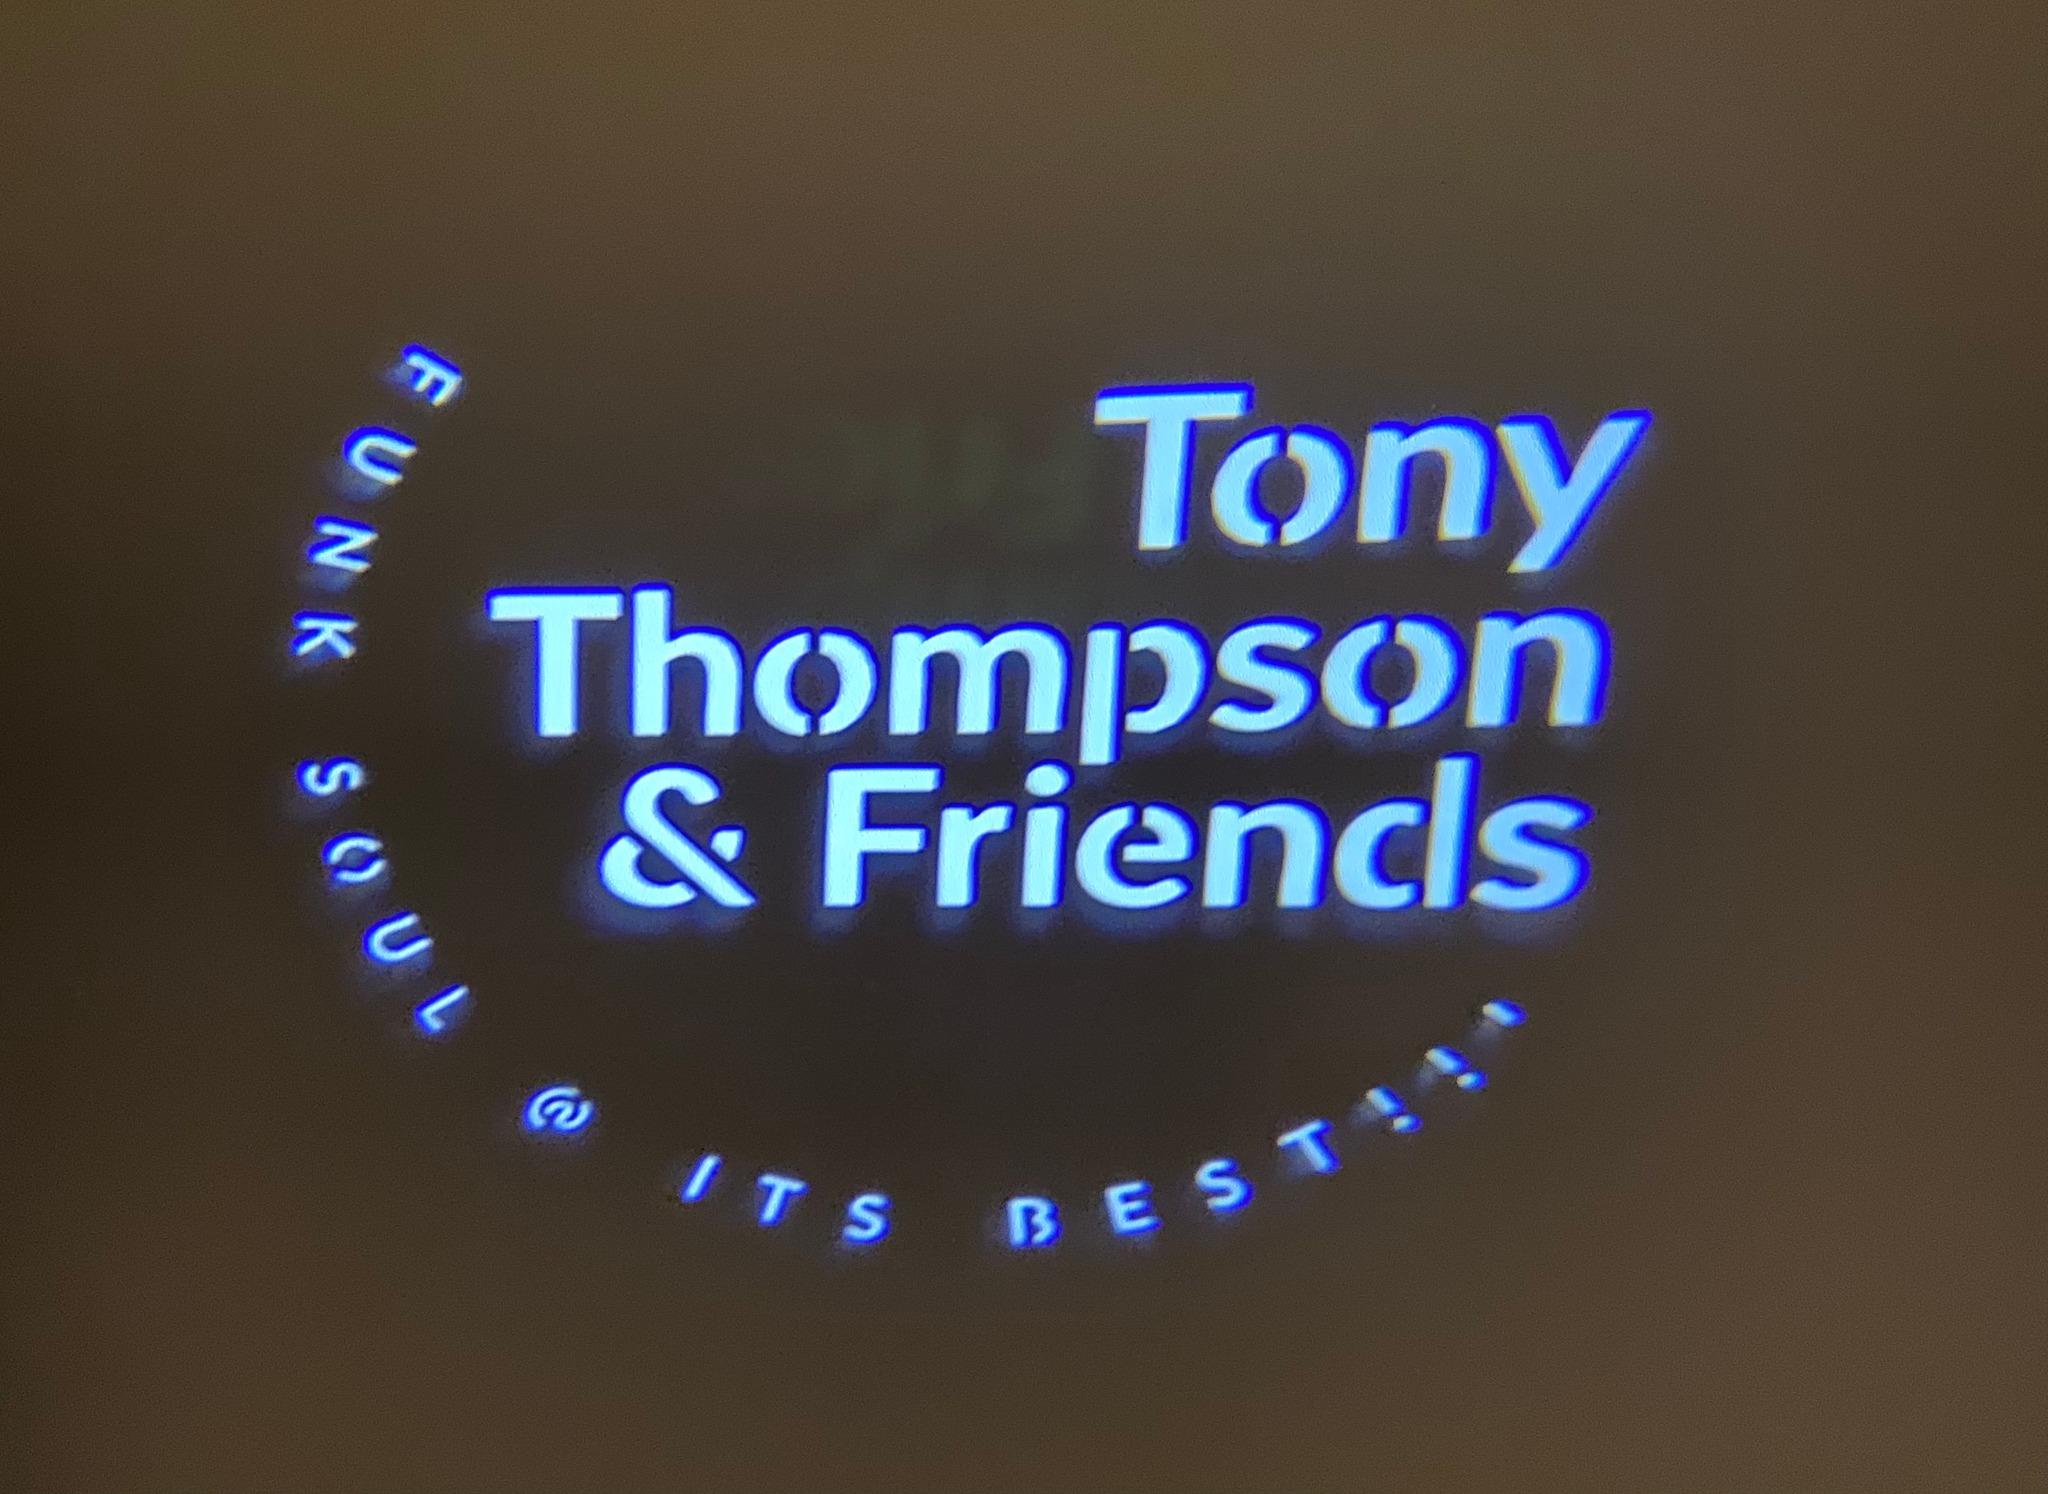 Tony Thompson & friends